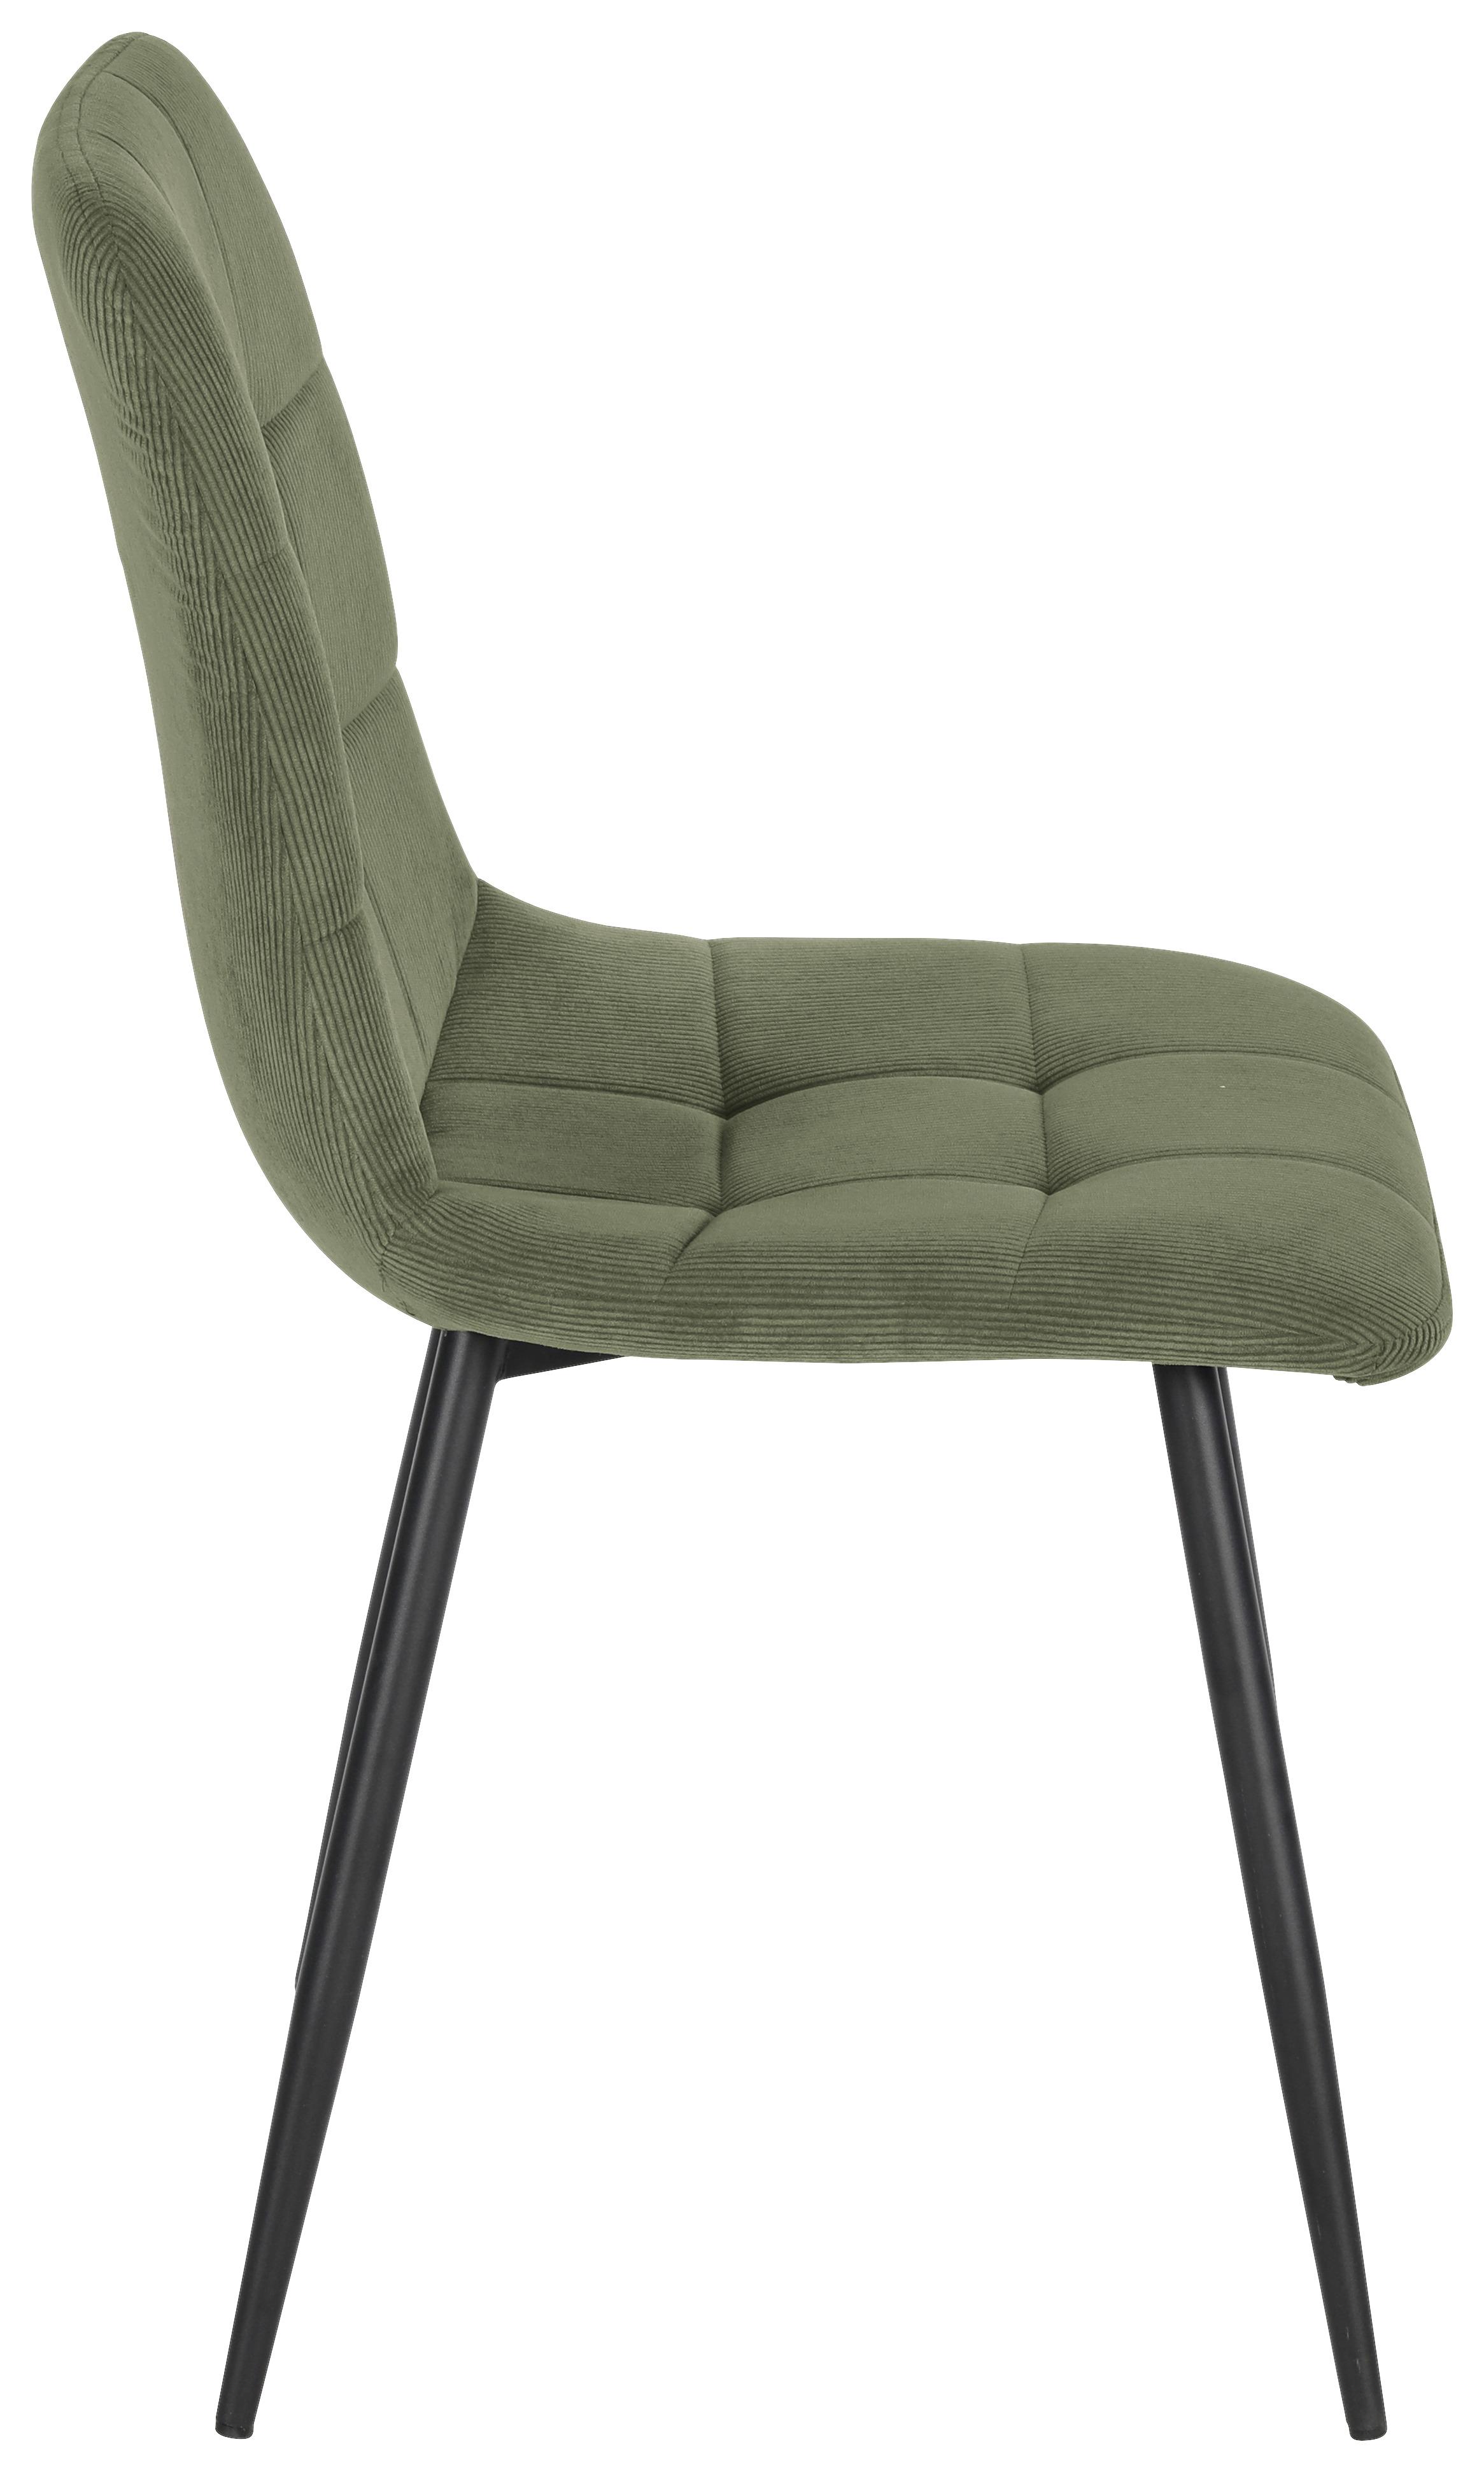 Stuhl aus Kord in Grün - Schwarz/Grün, MODERN, Holz/Textil (45/87/57cm) - Based